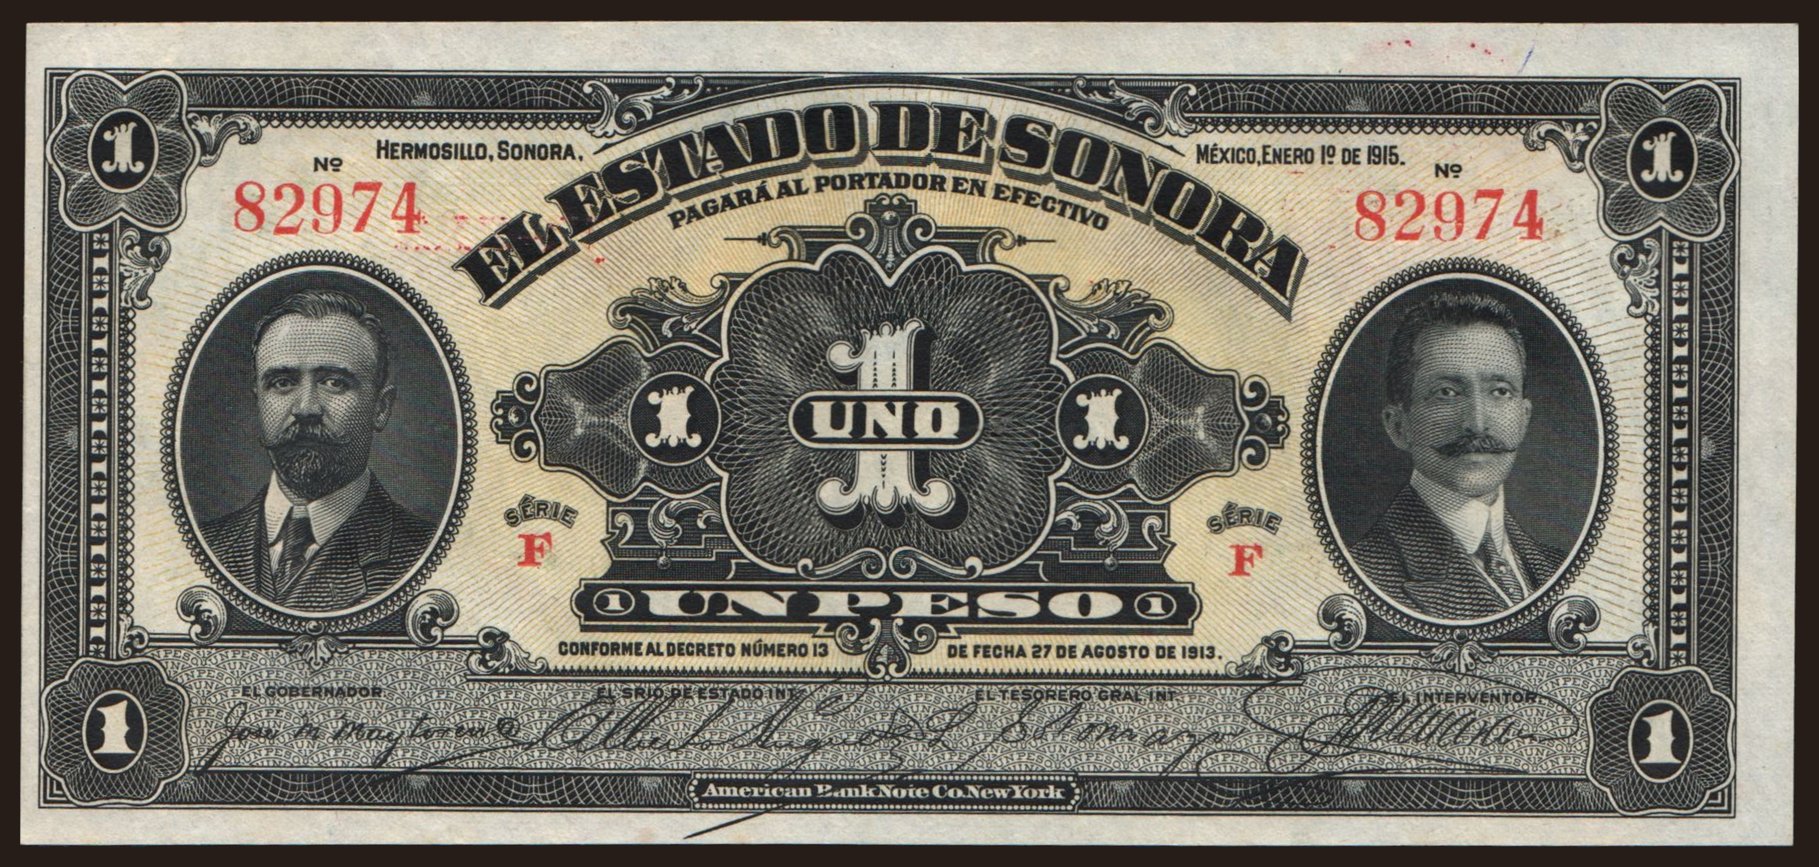 El Estado de Sonora, 1 peso, 1915